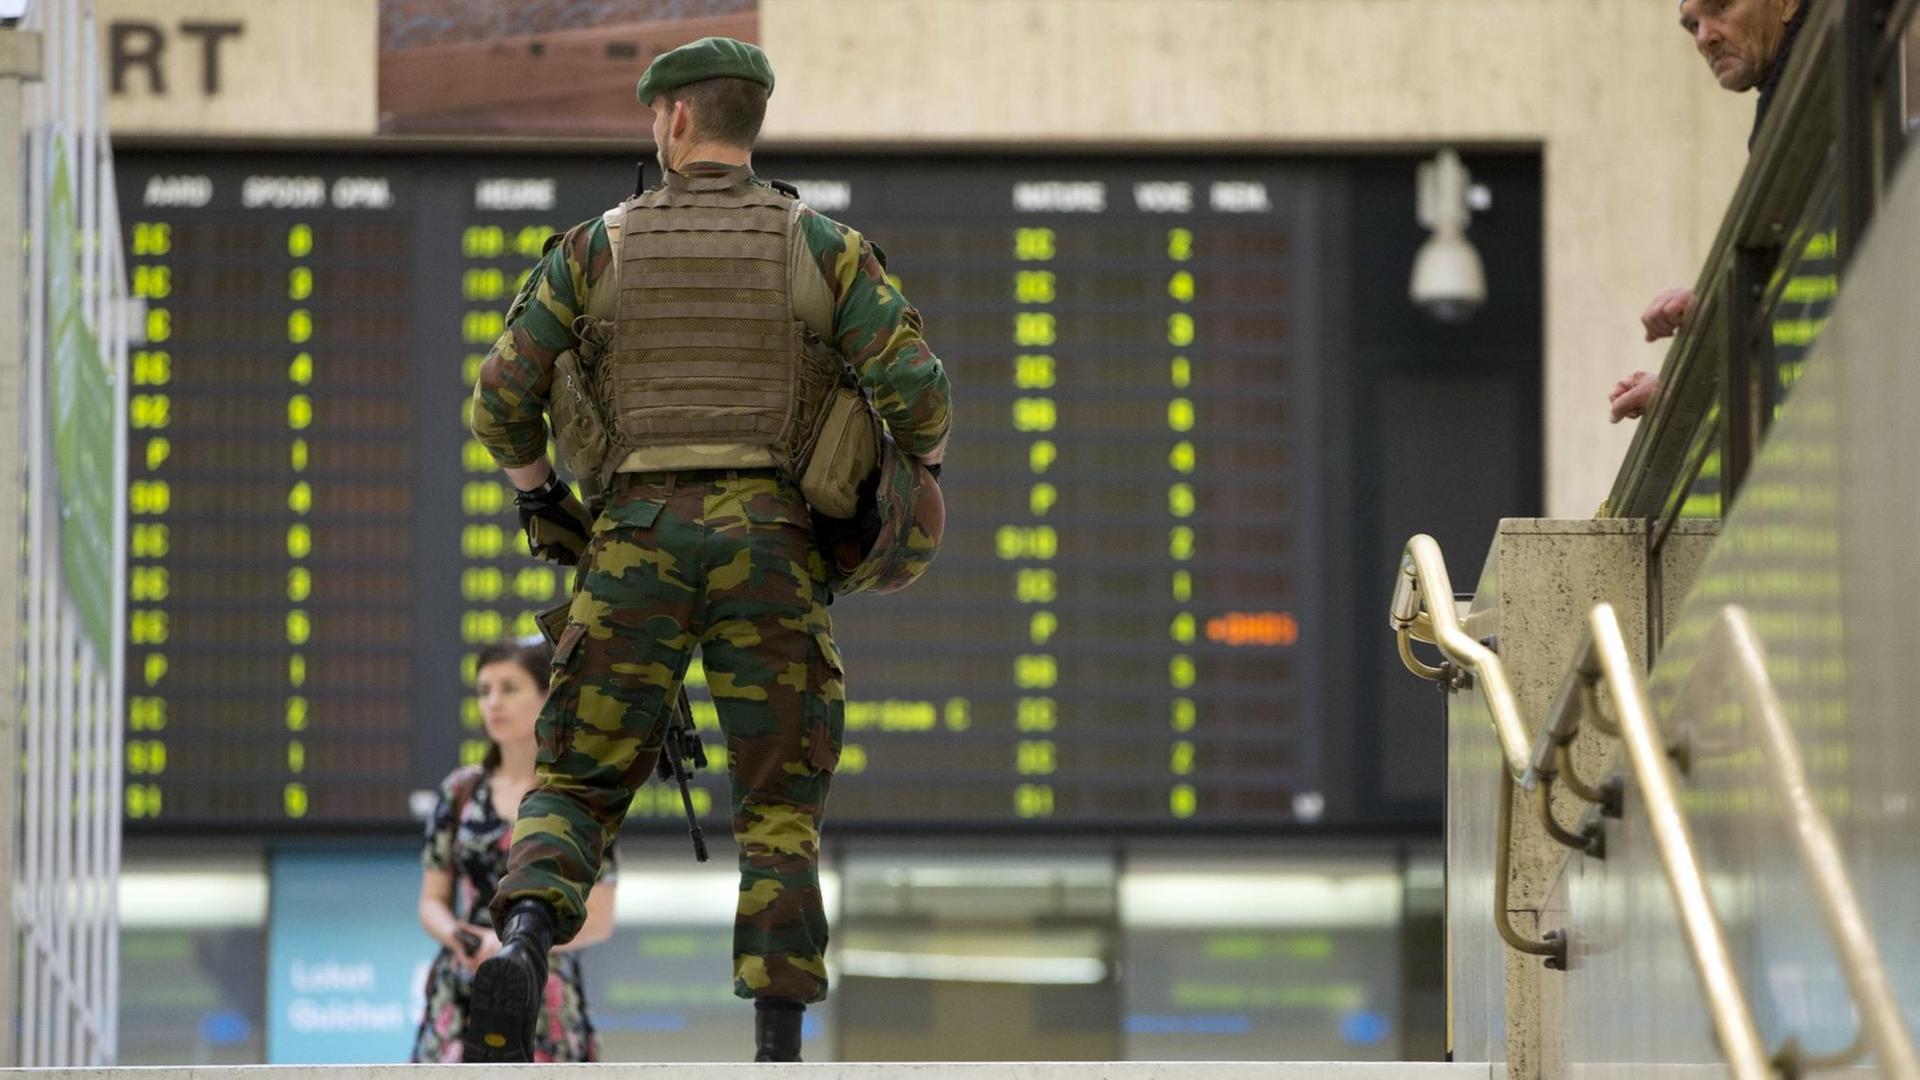 Soldaten patroulieren am 21.06.2017 im Zentralbahnhof von Brüssel (Belgien). Sicherheitskräfte schossen am Abend des 20.06.2017 im Zentralbahnhof der belgischen Hauptstadt einen Verdächtigen nieder, der kurz zuvor eine kleinere Explosion ausgelöst haben soll.